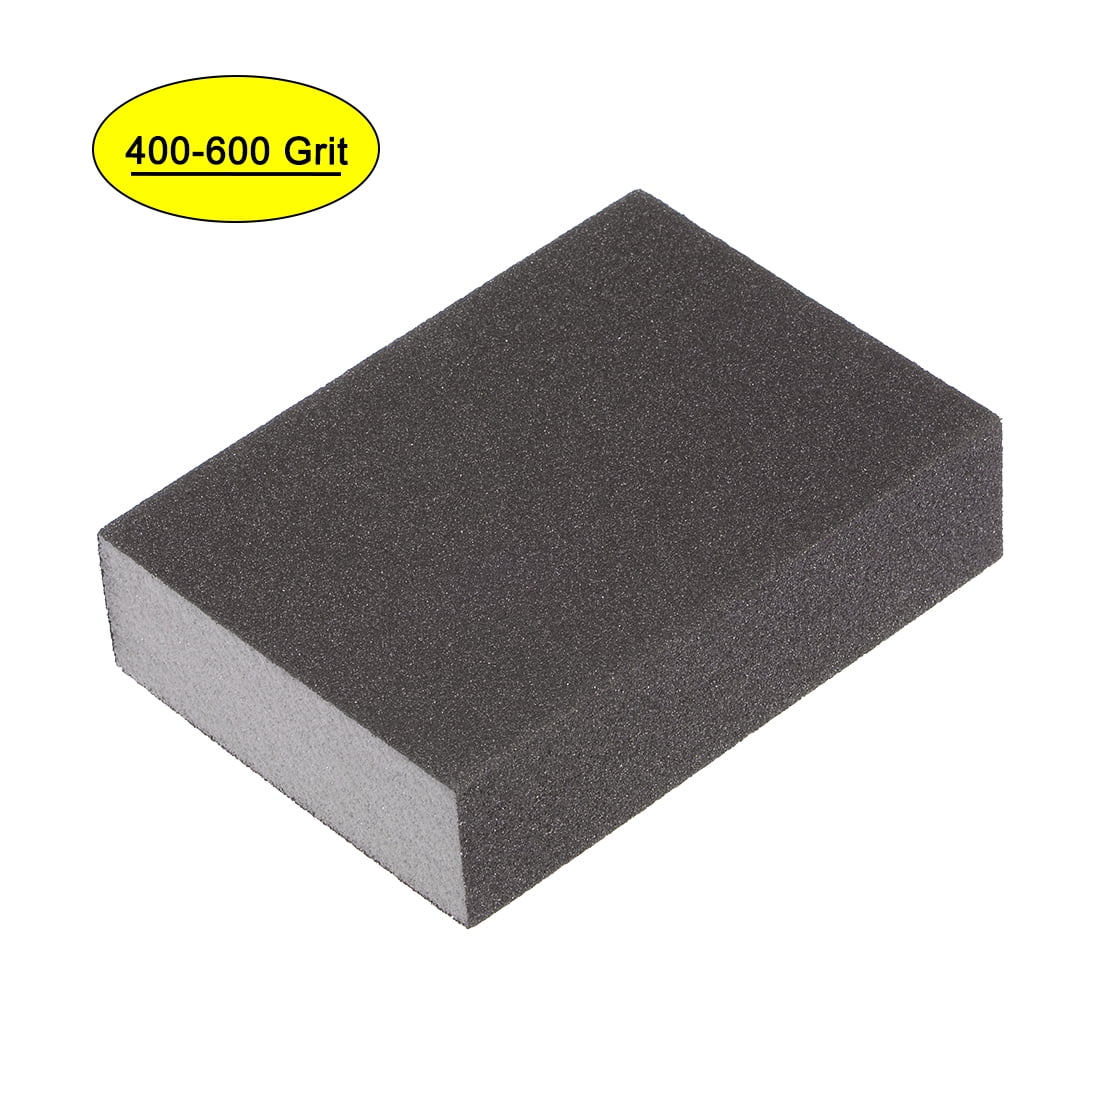 3M Sanding Sponge Drywall, Fine/Medium 9095NA